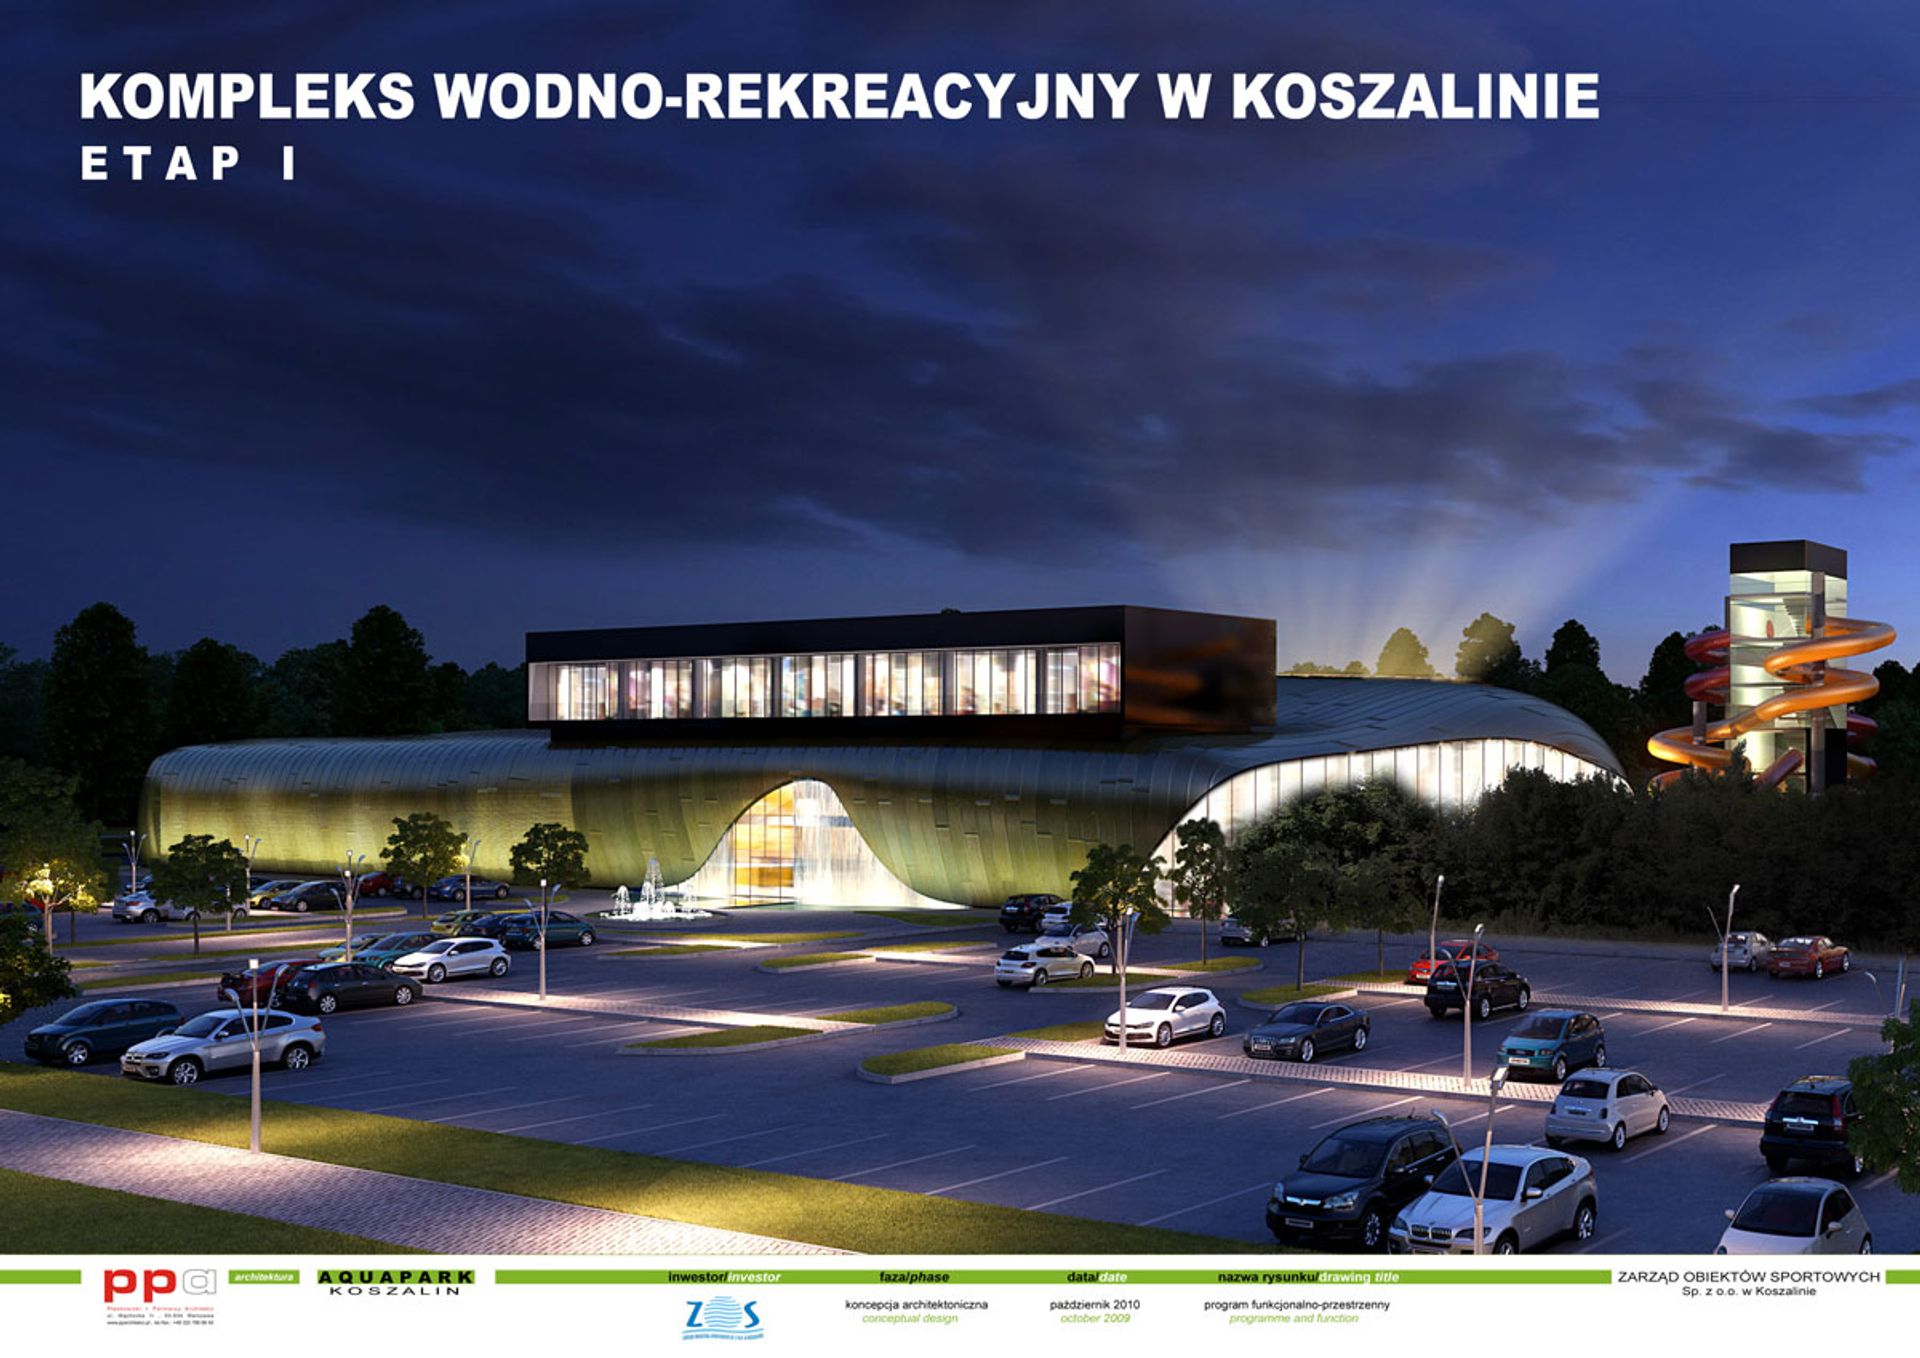  Zarząd Obiektów Sportowych Sp. z o.o. zerwał umowę na budowę aquaparku w Koszalinie